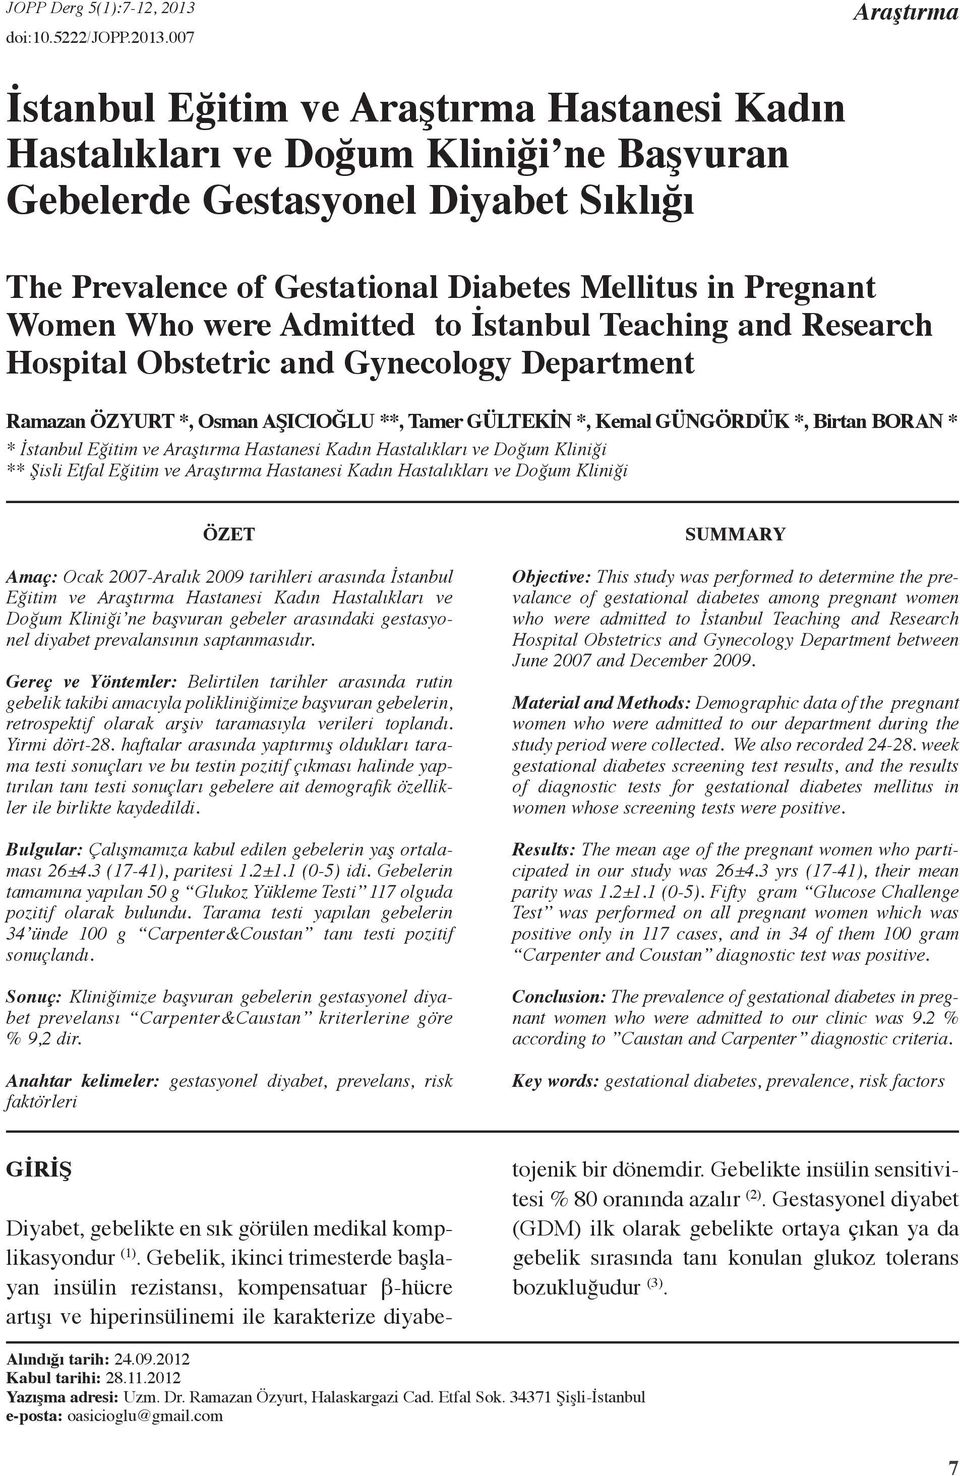 007 Araştırma İstanbul Eğitim ve Araştırma Hastanesi Kadın Hastalıkları ve Doğum Kliniği ne Başvuran Gebelerde Gestasyonel Diyabet Sıklığı The Prevalence of Gestational Diabetes Mellitus in Pregnant